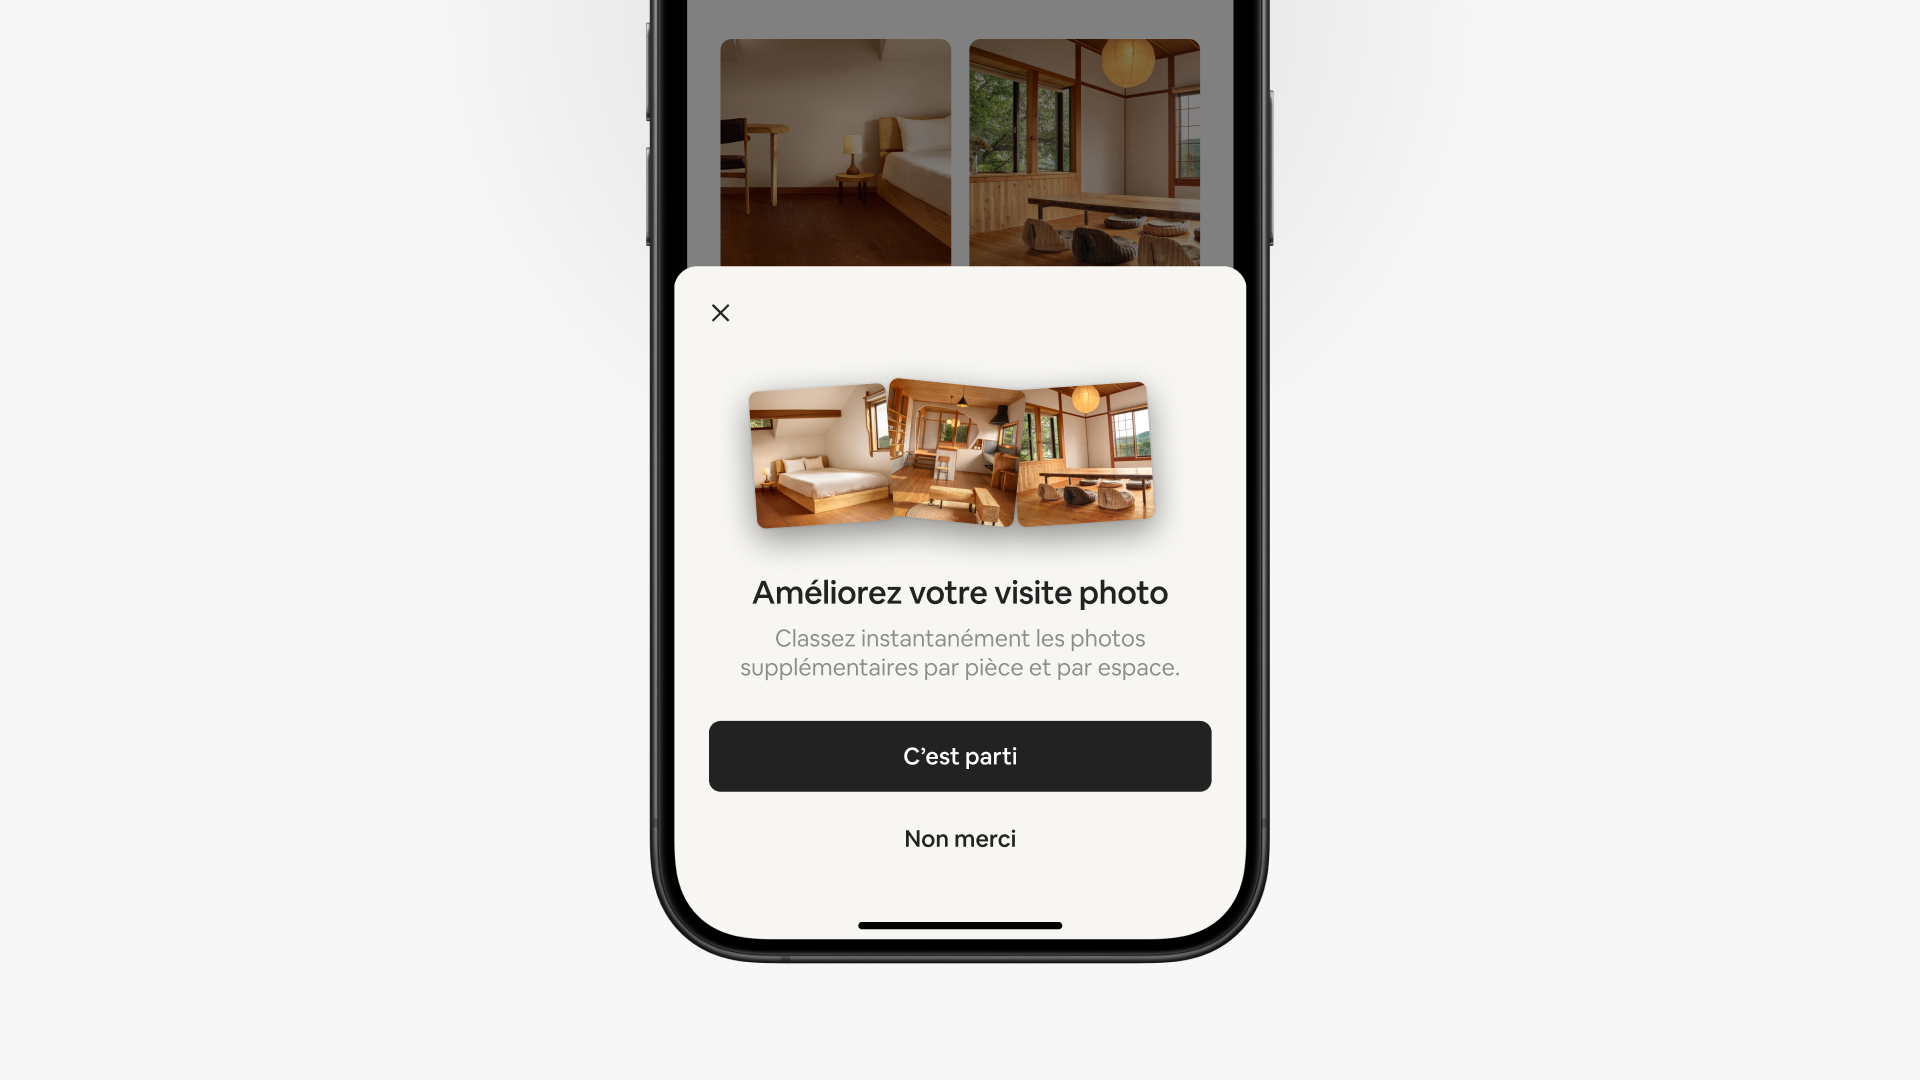 Une fenêtre contextuelle dans l'application Airbnb indique « Améliorez votre visite photo » au-dessus de deux boutons, « C'est parti » et « Non merci ».